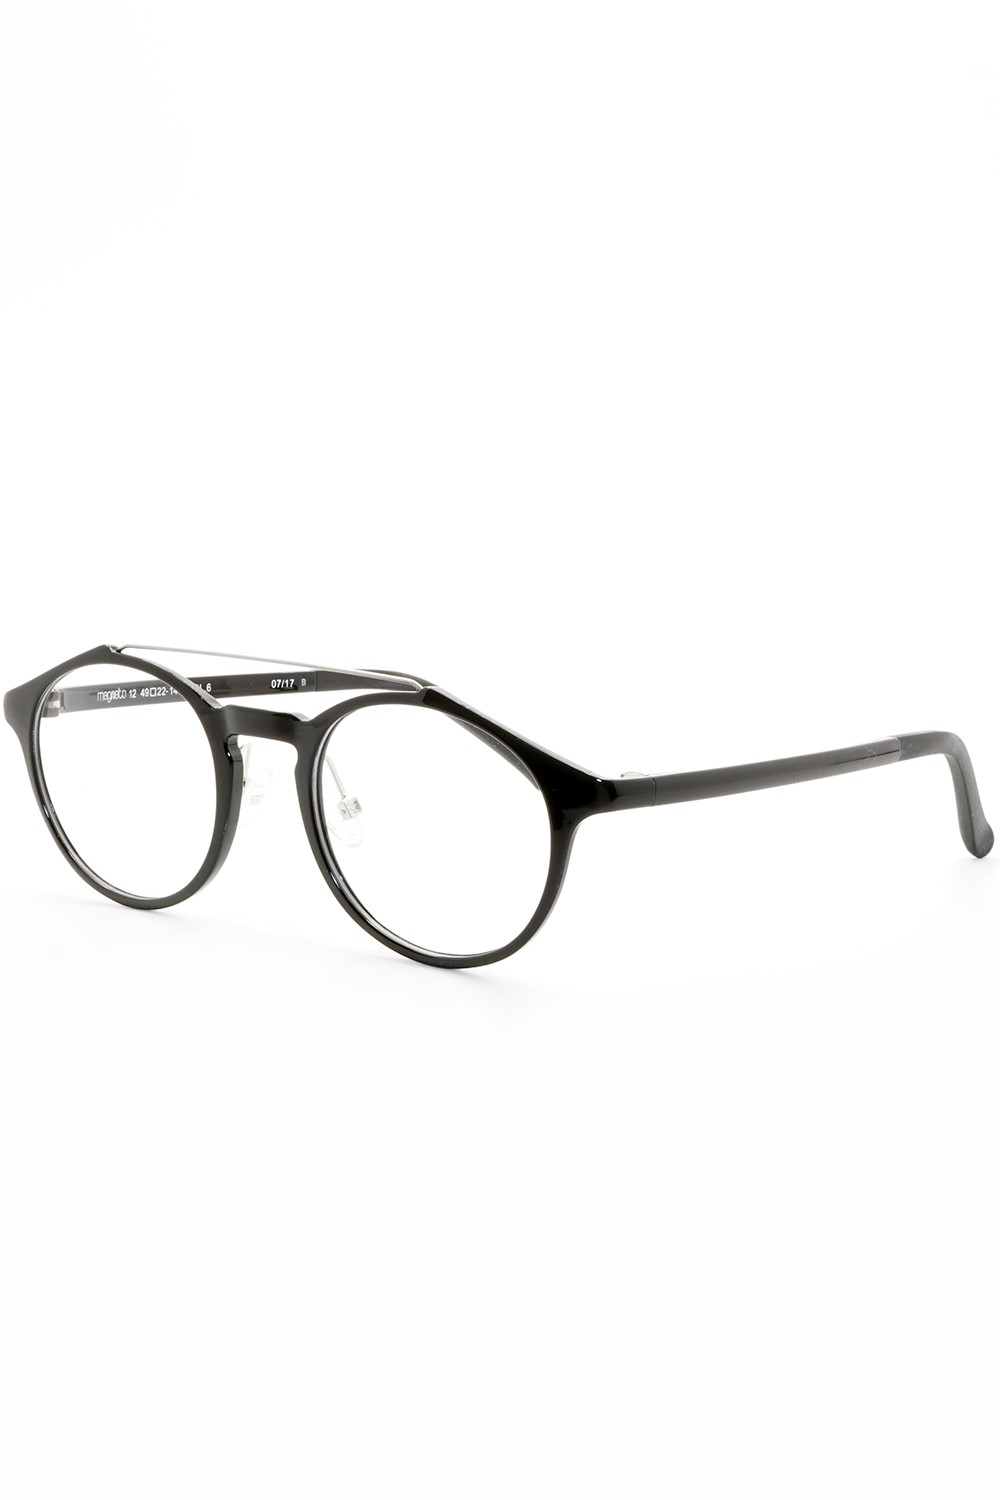 TF Occhiali - Occhiali da vista in plastica con clip solare tondi unisex nero -